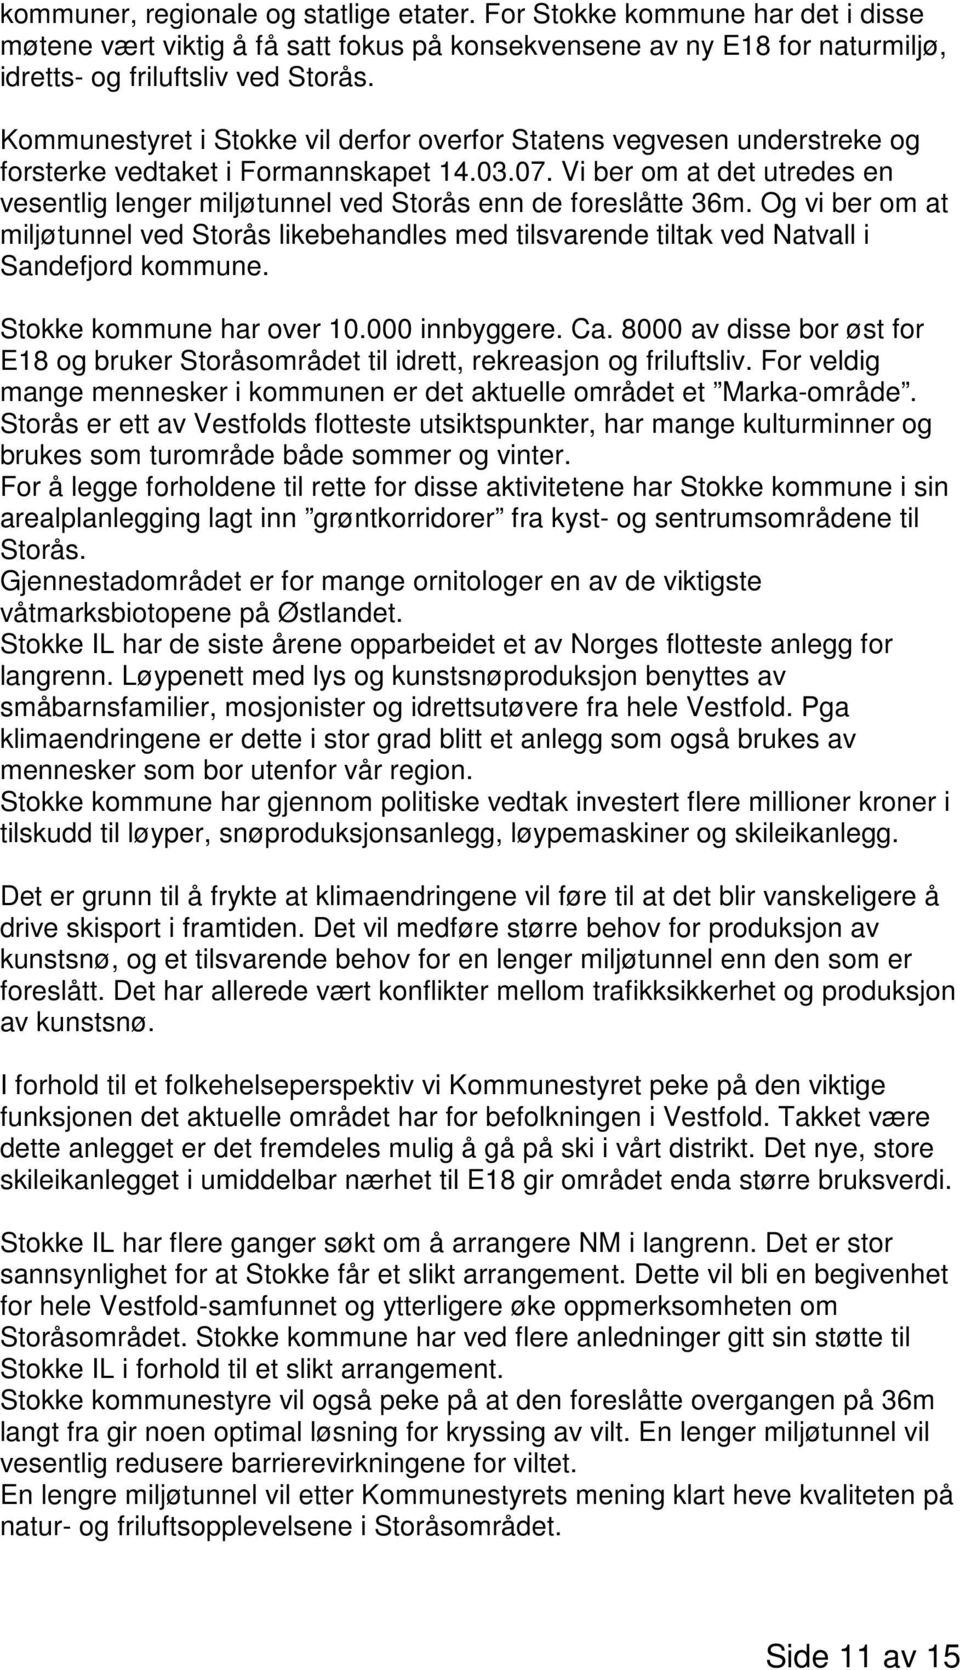 Vi ber om at det utredes en vesentlig lenger miljøtunnel ved Storås enn de foreslåtte 36m. Og vi ber om at miljøtunnel ved Storås likebehandles med tilsvarende tiltak ved Natvall i Sandefjord kommune.